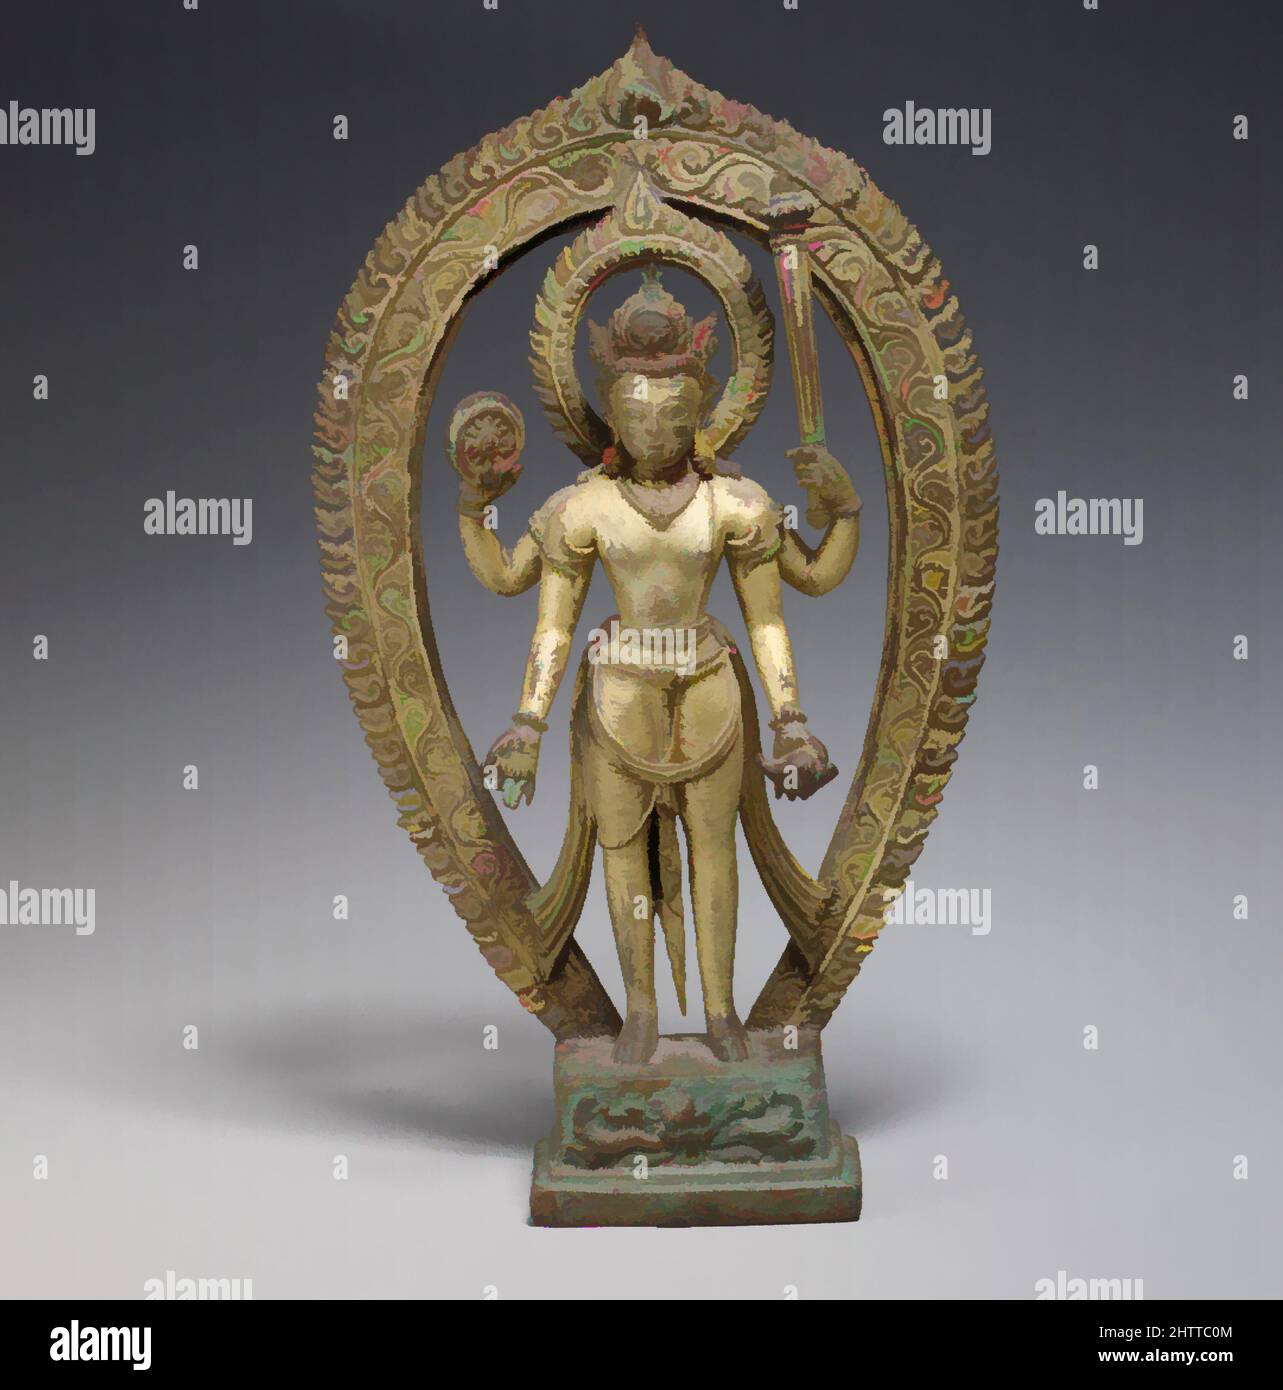 Art inspiré par Vishnu, période Thakuri, 10th–11th siècle, Népal (vallée de Katmandou), alliage de cuivre doré, H. 8 1/2 po (21,6 cm) ; avec 5 po (12,7 cm) ; D. 1 3/8 po (3,5 cm) ; poids 2 lbs (.9 kg), Sculpture, Vishnu en tant que protecteur divin et conservateur de l'ordre assume une posture symétrique, les œuvres classiques modernisées par Artotop avec un peu de modernité. Formes, couleur et valeur, impact visuel accrocheur sur l'art émotions par la liberté d'œuvres d'art d'une manière contemporaine. Un message intemporel qui cherche une nouvelle direction créative. Artistes qui se tournent vers le support numérique et créent le NFT Artotop Banque D'Images